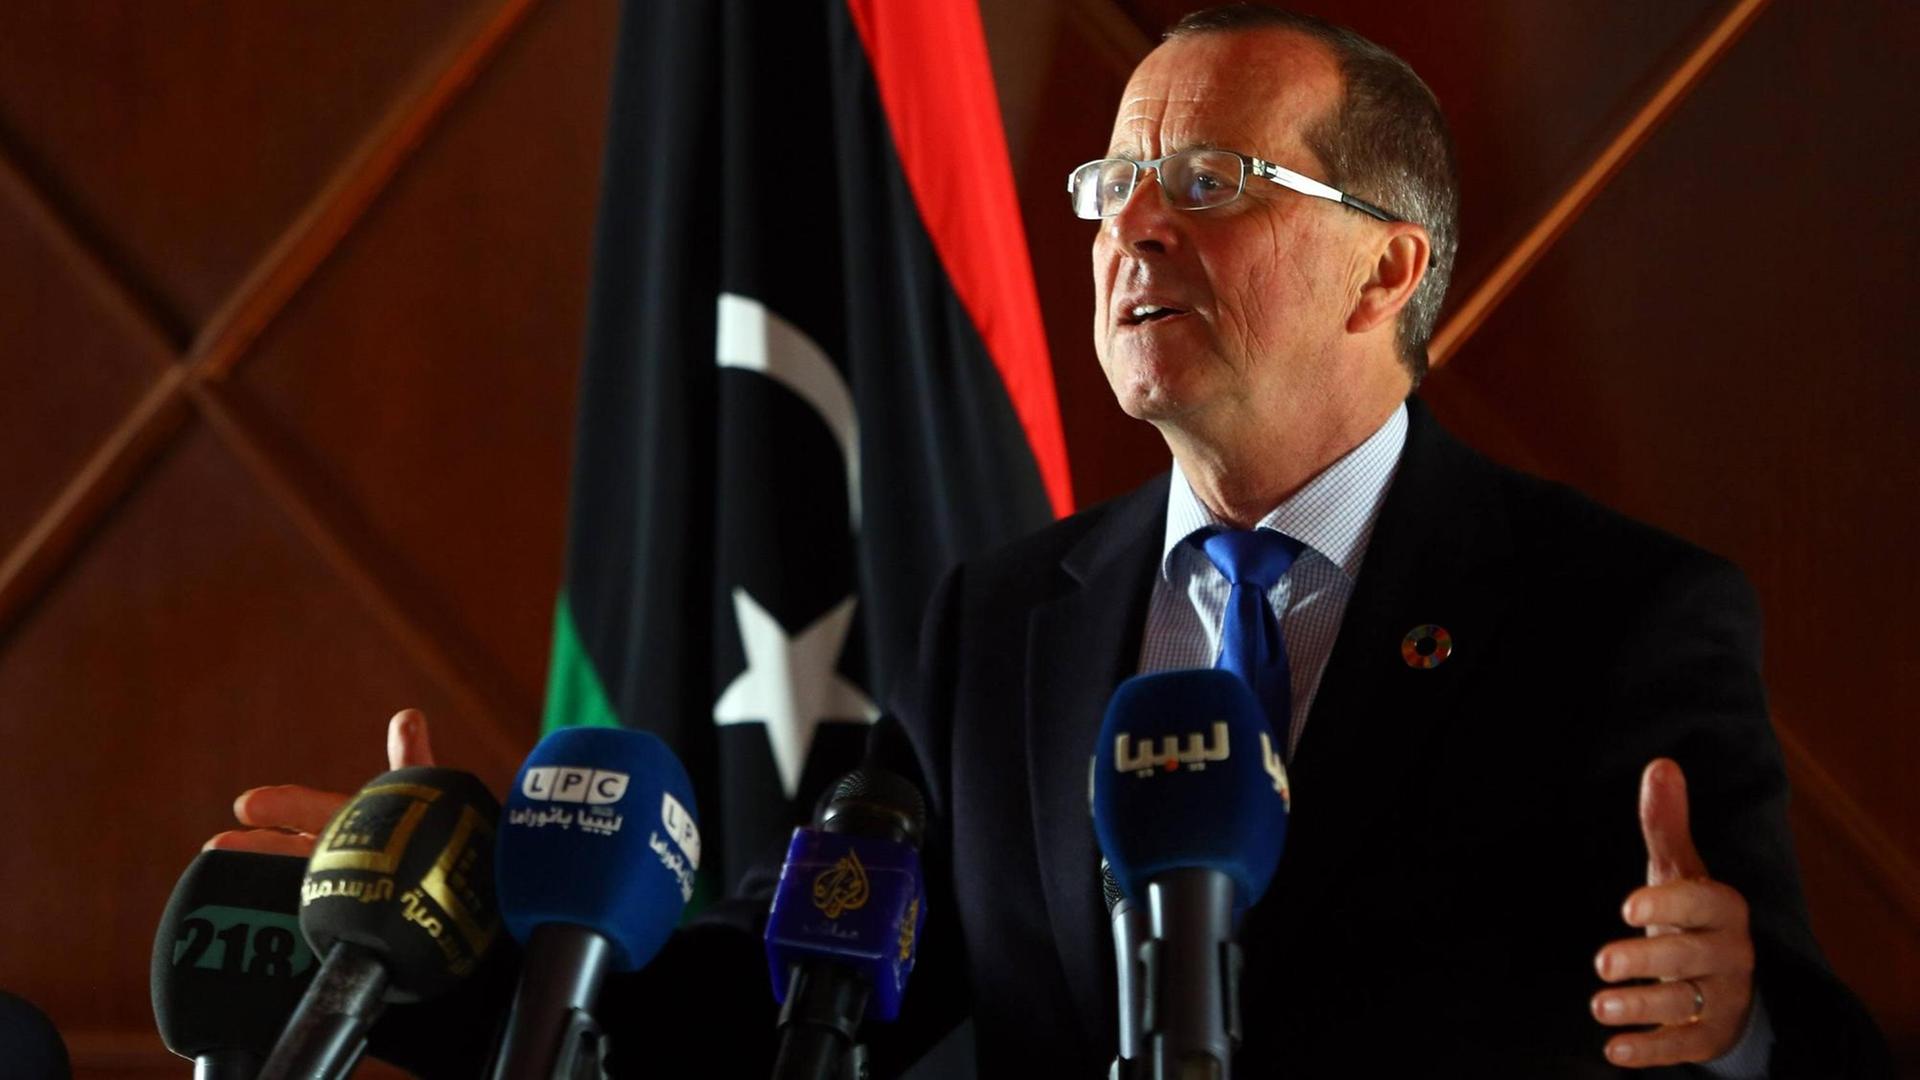 Der UNO-Koordinator für Libyen, Martin Kobler, spricht am 8. Januar 2017 auf einer Pressekonferenz während eines Besuchs in der libyschen Hauptstadt Tripolis.